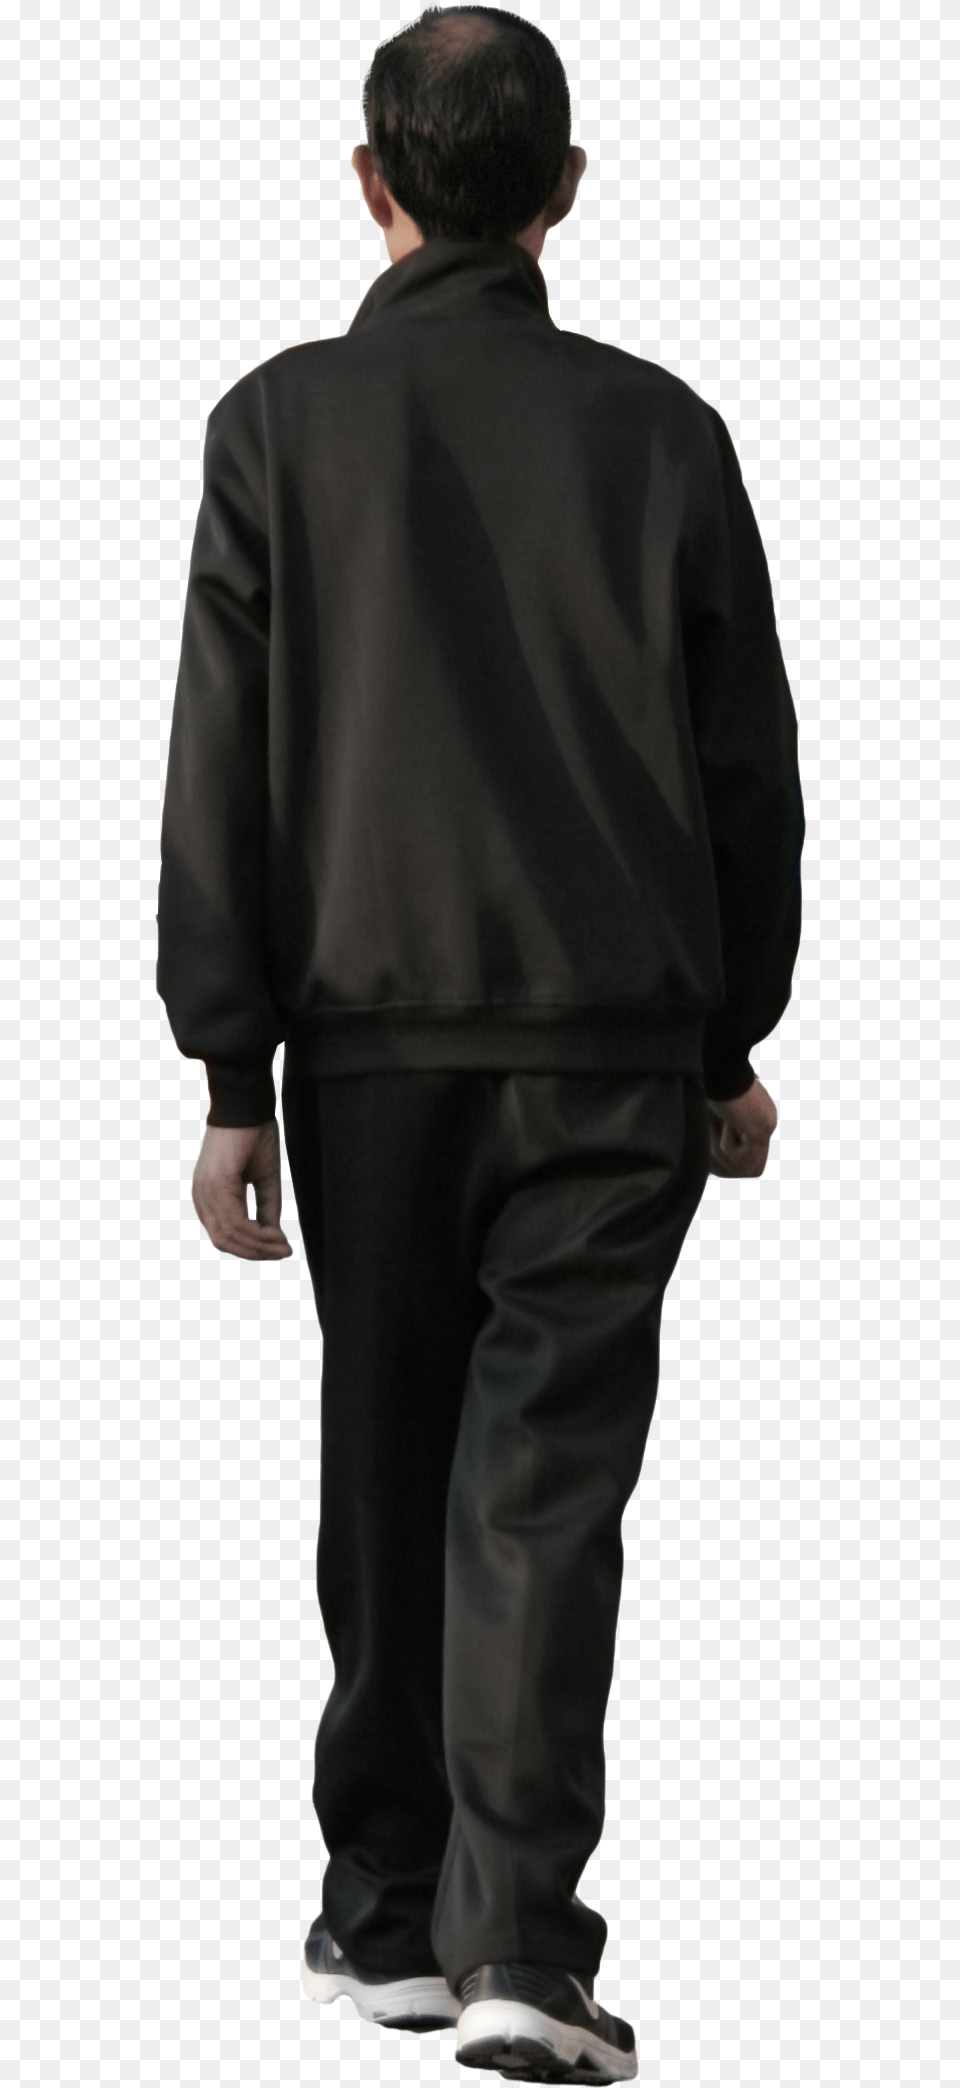 Black People Walking Walking Man, Clothing, Coat, Suit, Formal Wear Png Image